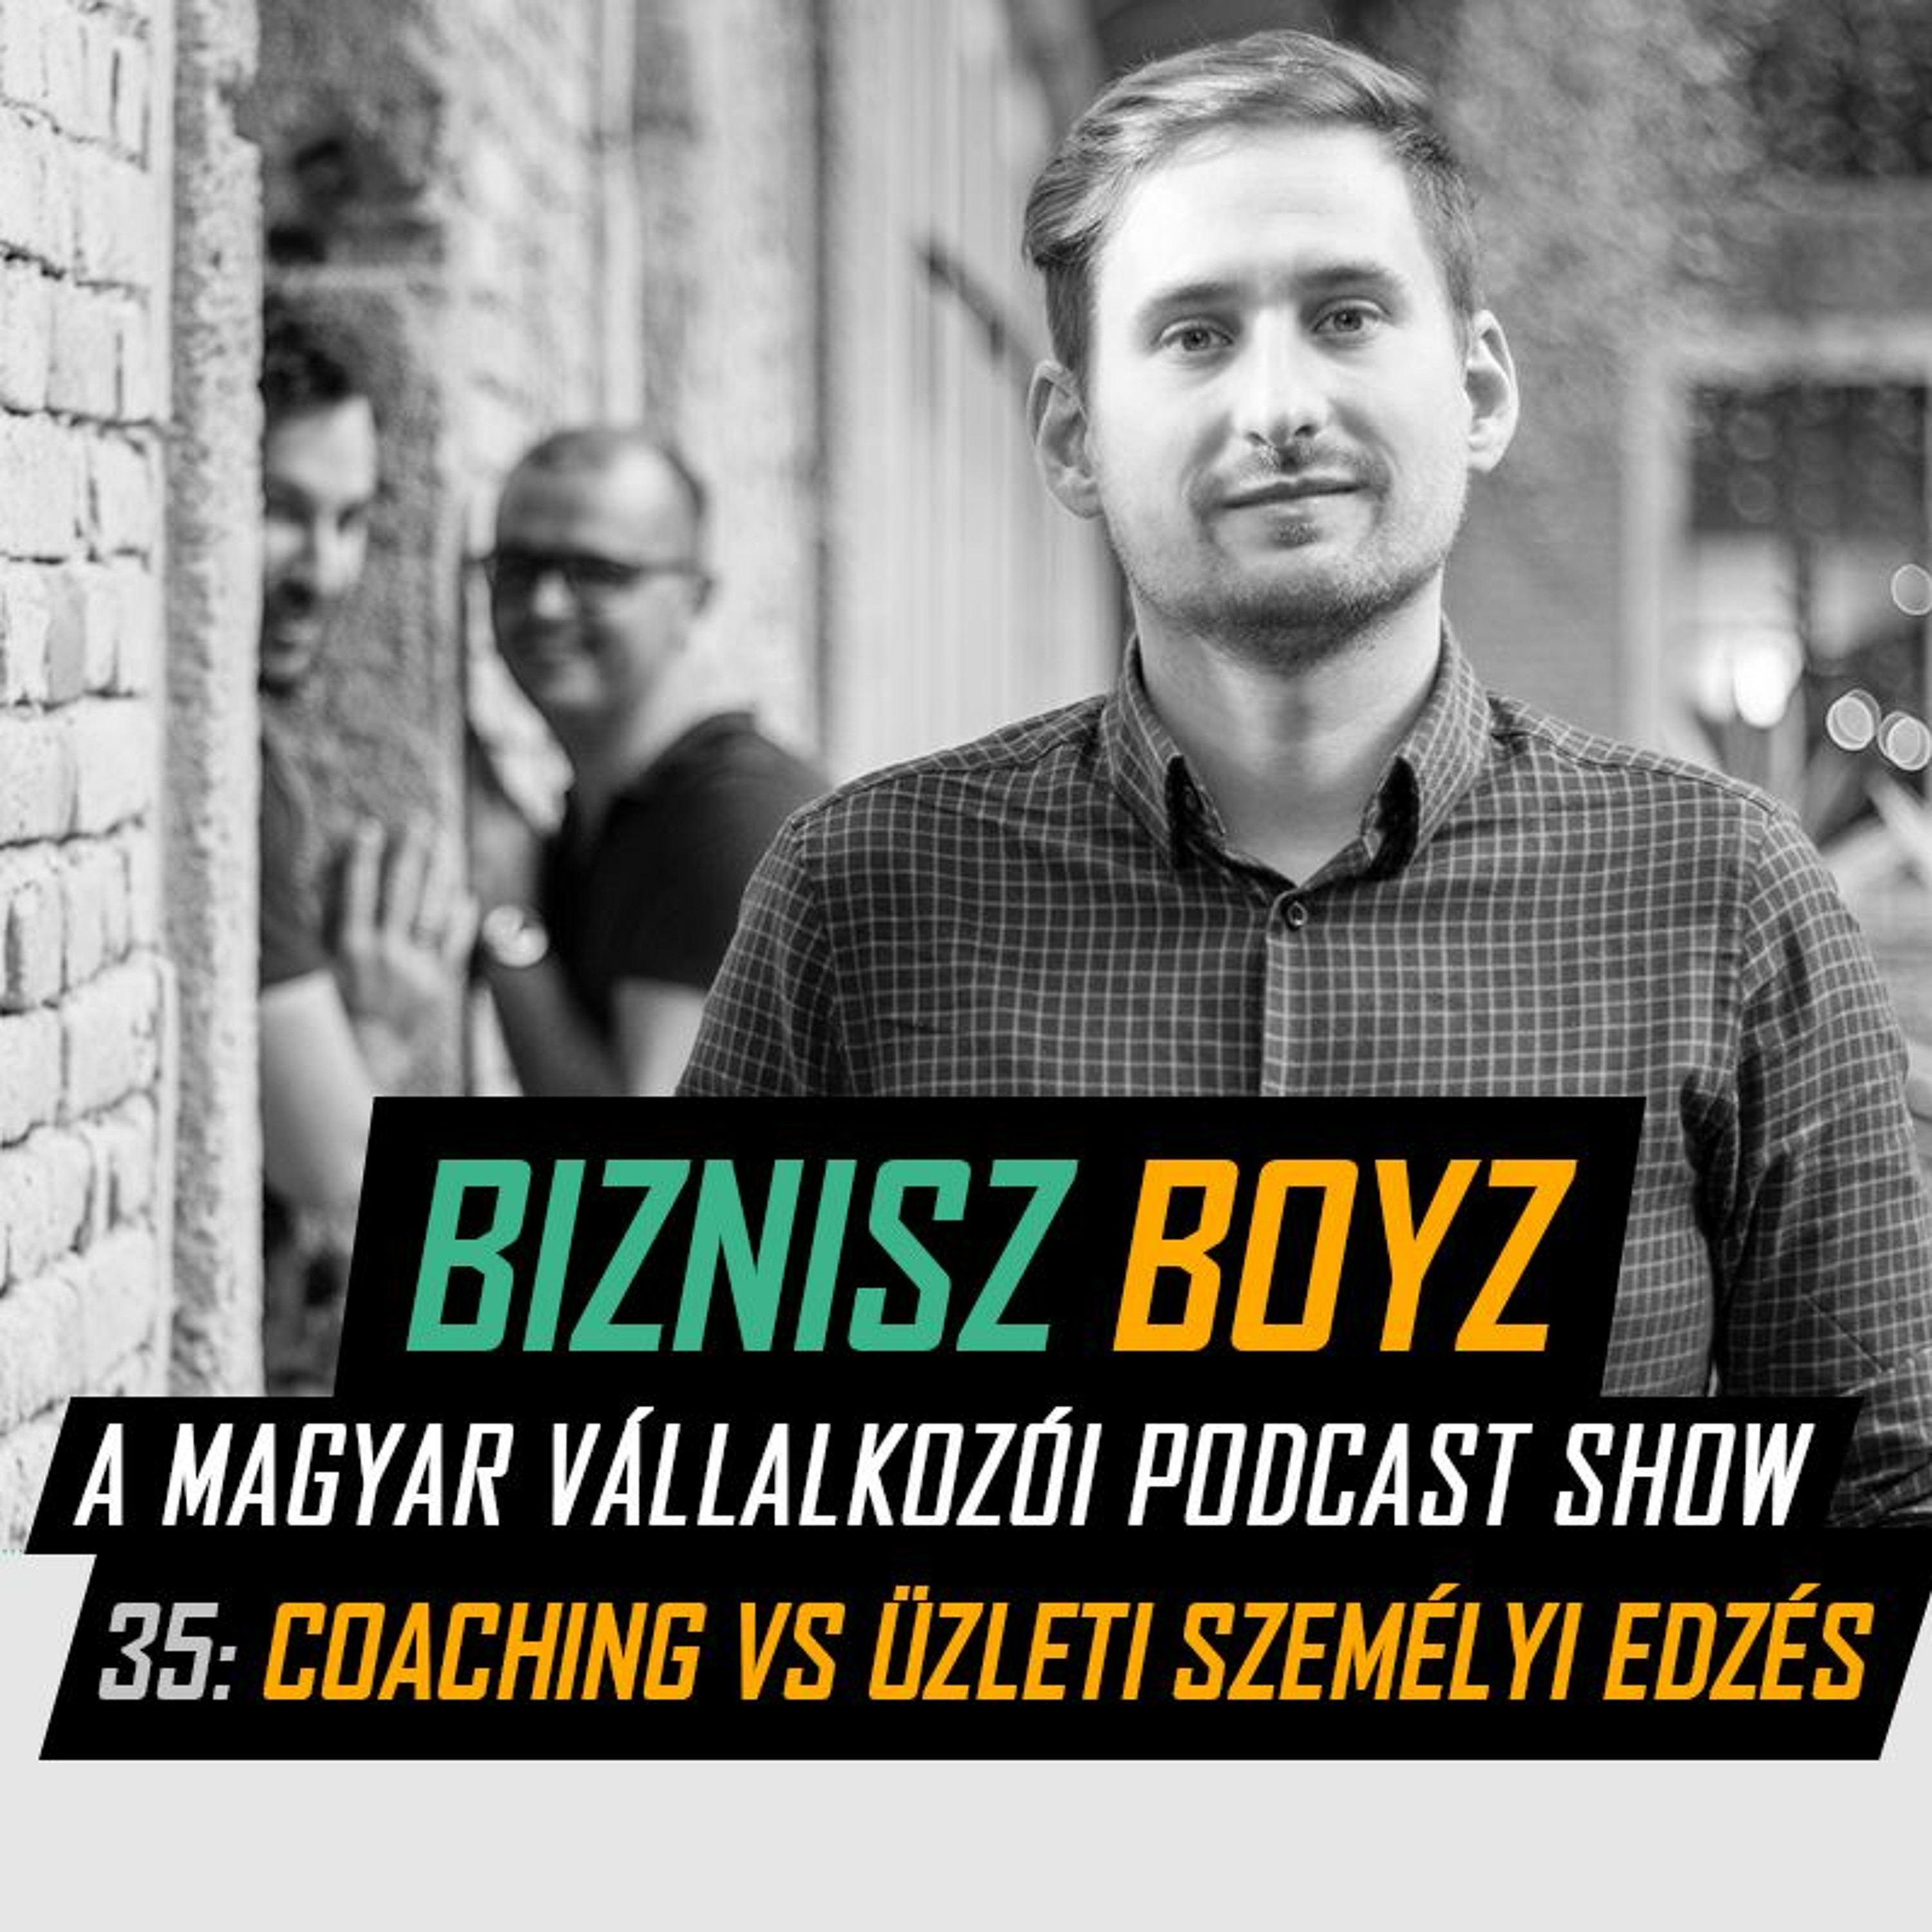 35. Az első fél év vállalkozóként | Coaching vs. üzleti személyi edzés | Biznisz Boyz Podcast